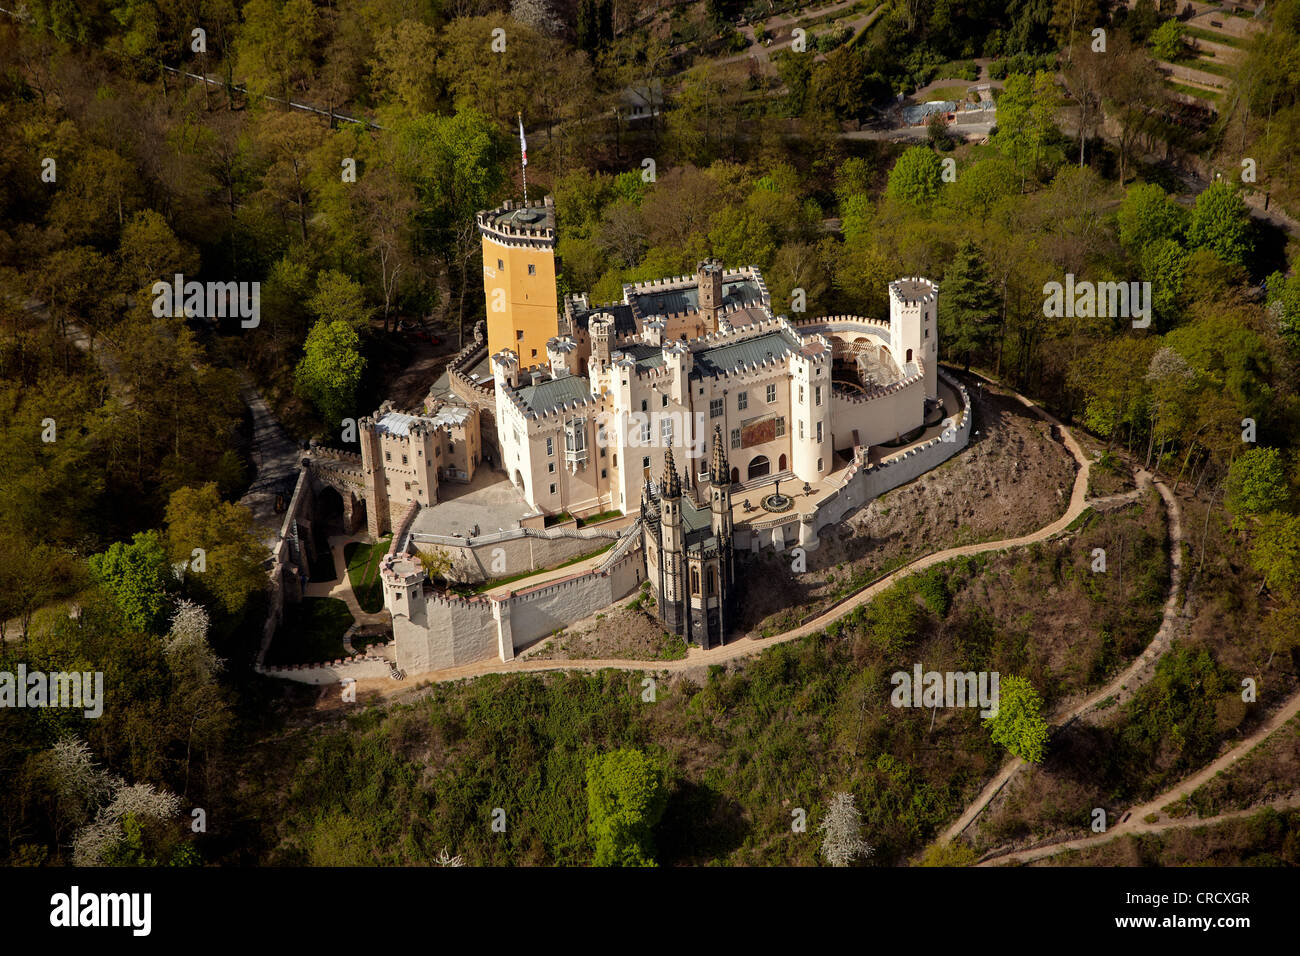 Luftbild, Schloss Stolzenfels Castle, Koblenz, UNESCO-obere mittlere Rhein Tal, Rheinland-Pfalz, Deutschland, Europa Stockfoto